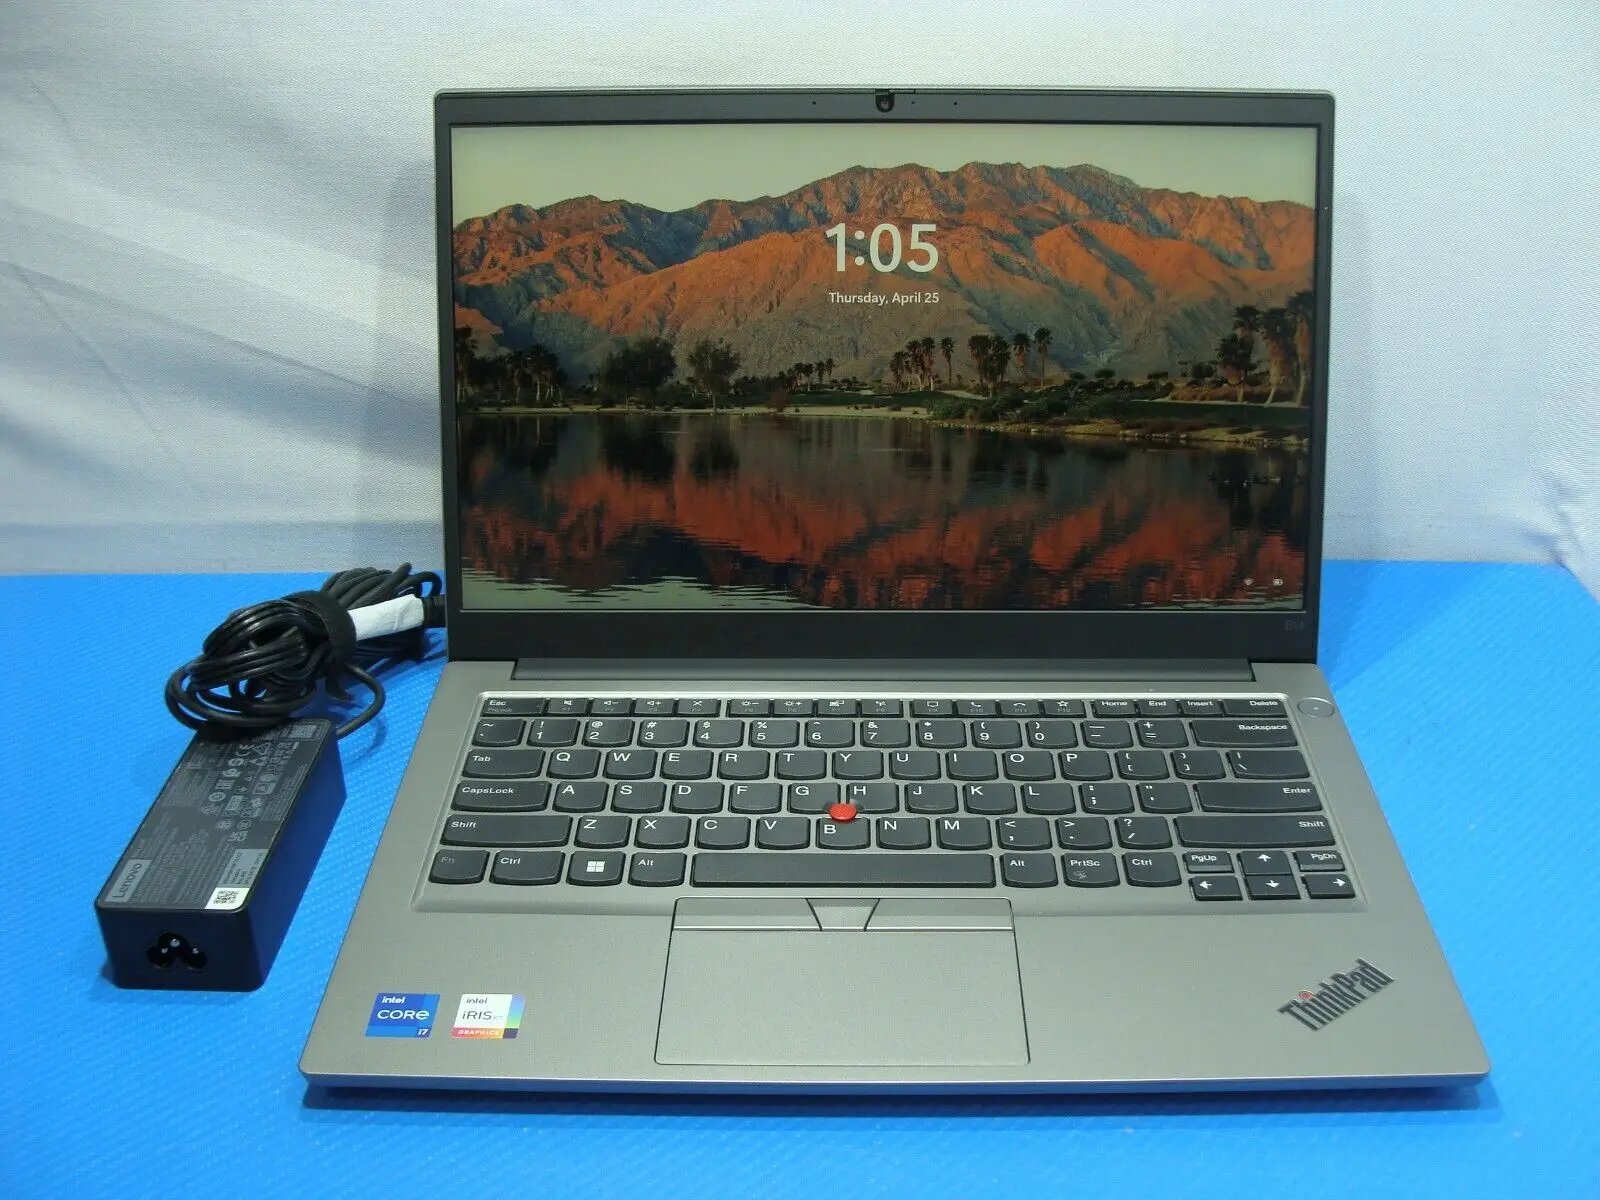 Lenovo ThinkPad E14 Gen 4 14